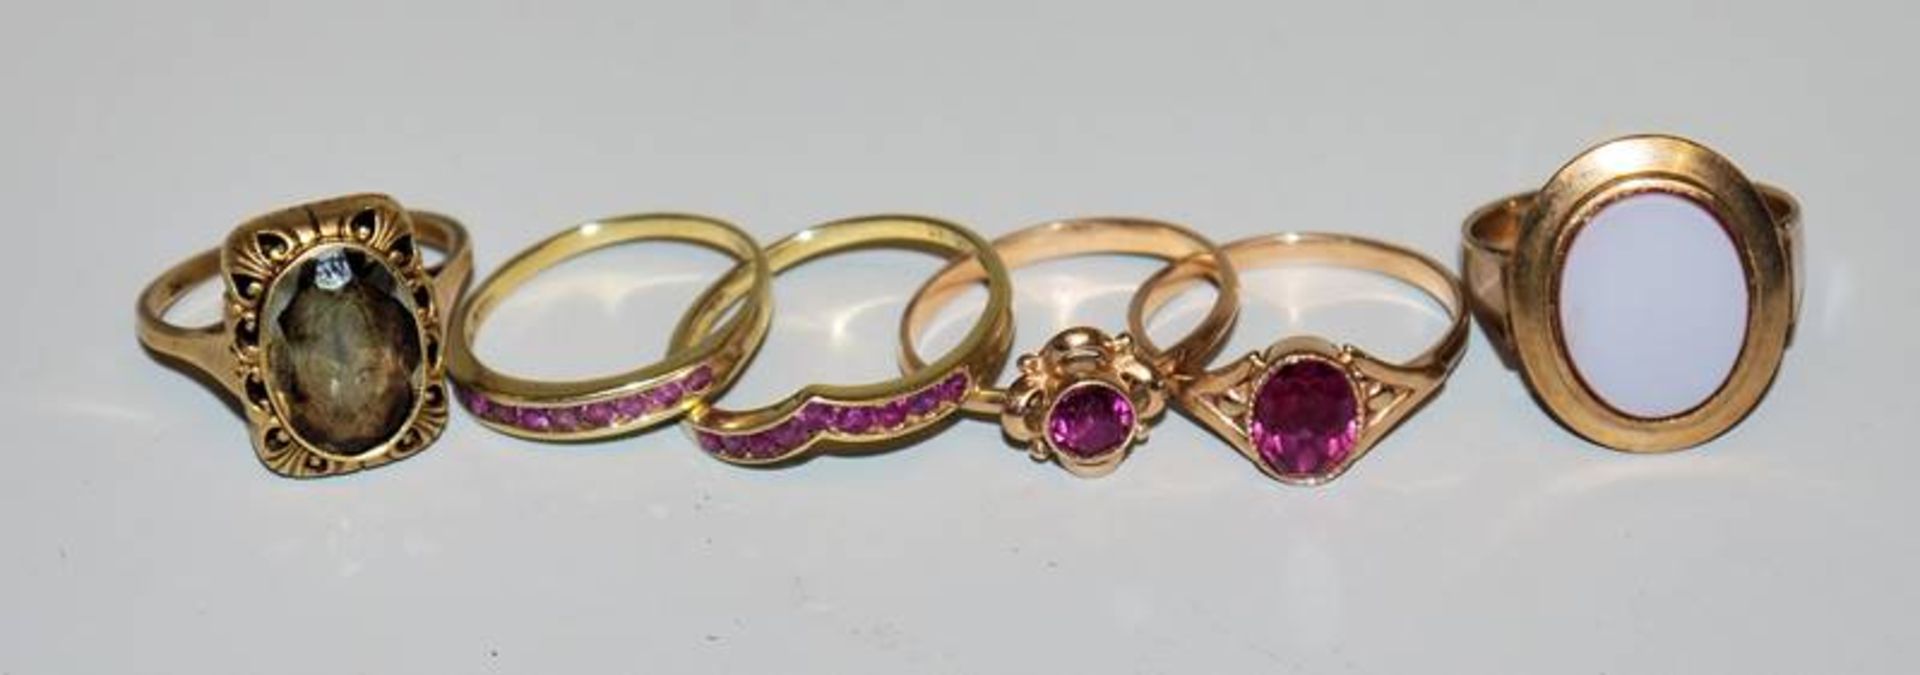 Sechs Ringe mit Farbsteinbesatz ab 1900, Gold